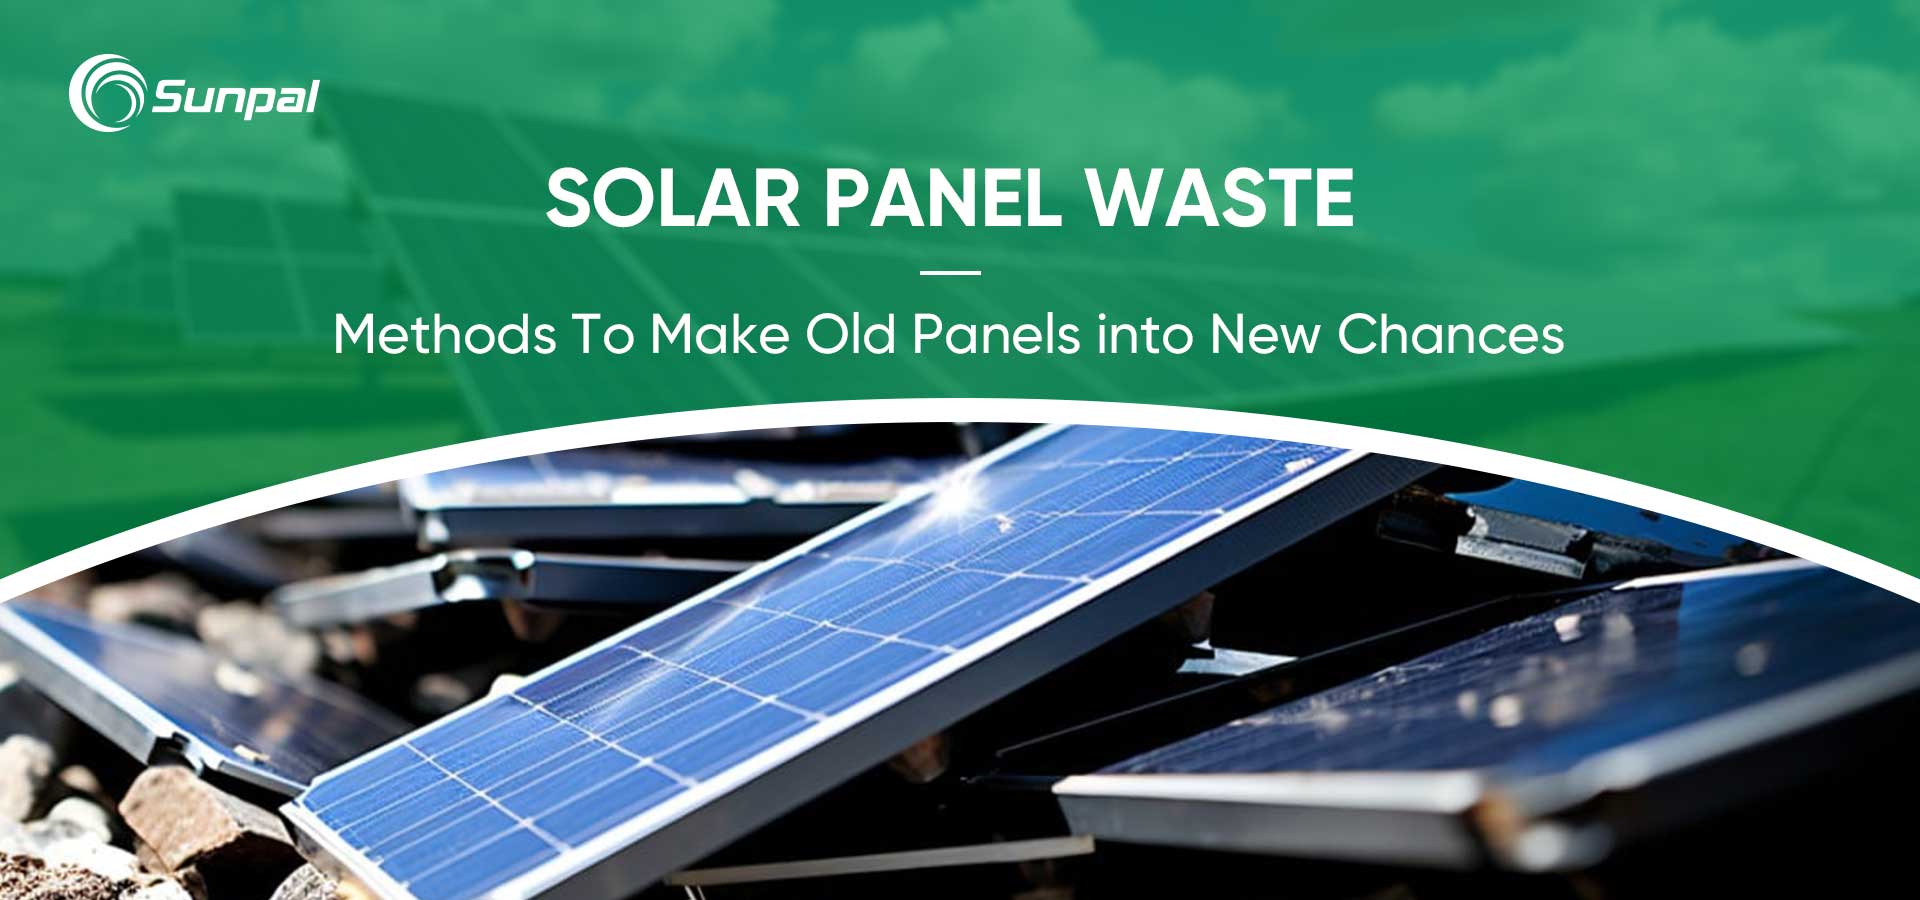 Upcykling odpadów z paneli słonecznych: przekształcanie starych paneli w nowe szanse